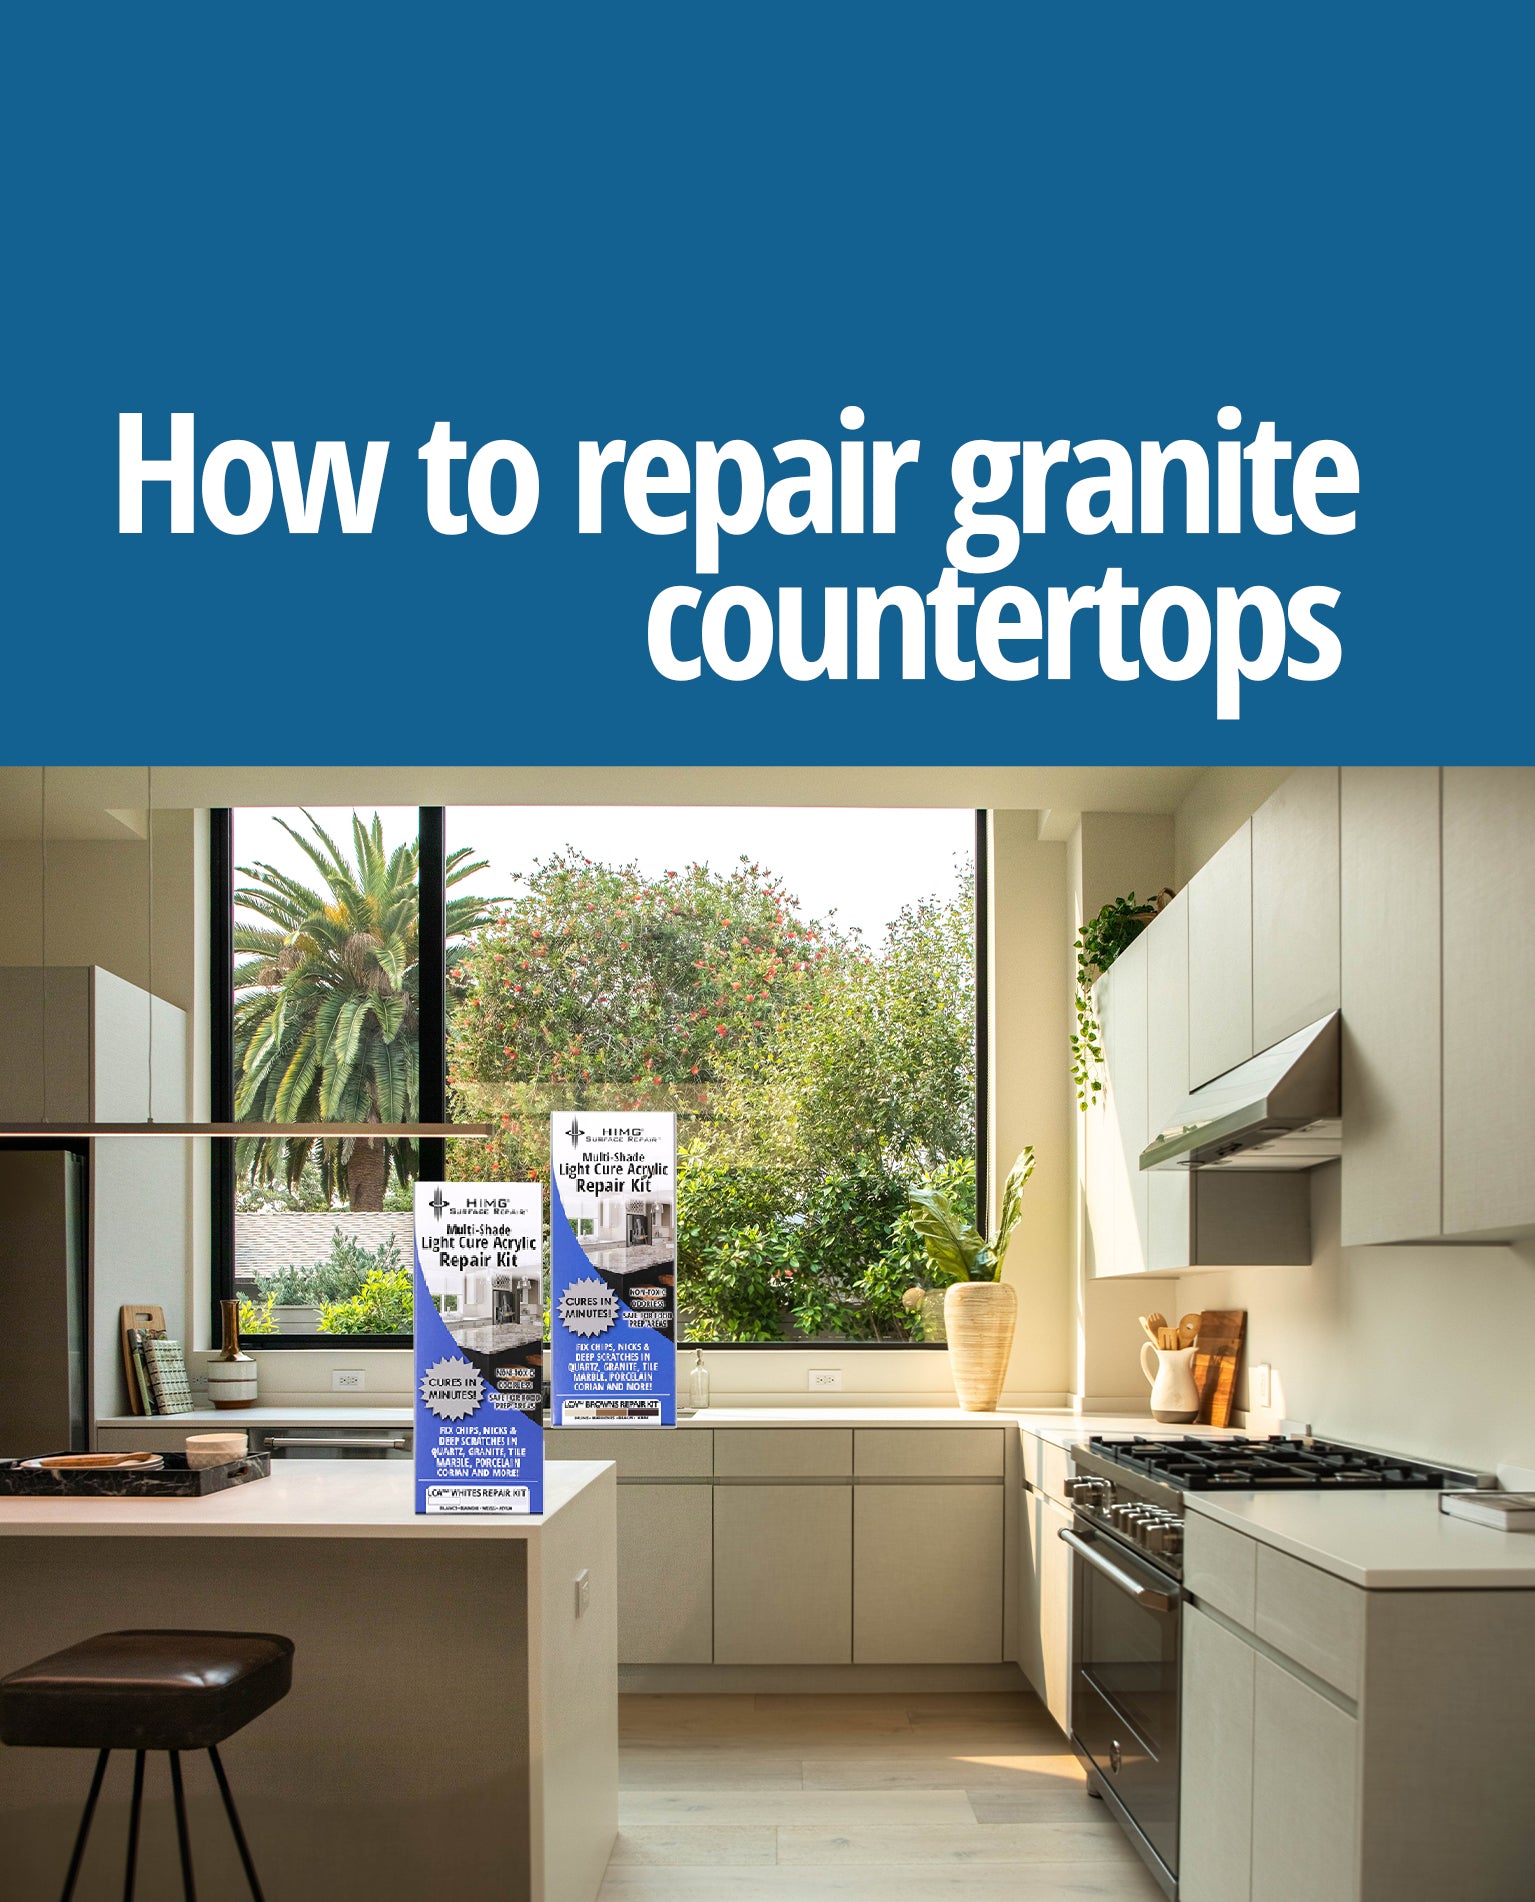 Granite Countertop Repair – HIMG® Surface Repair